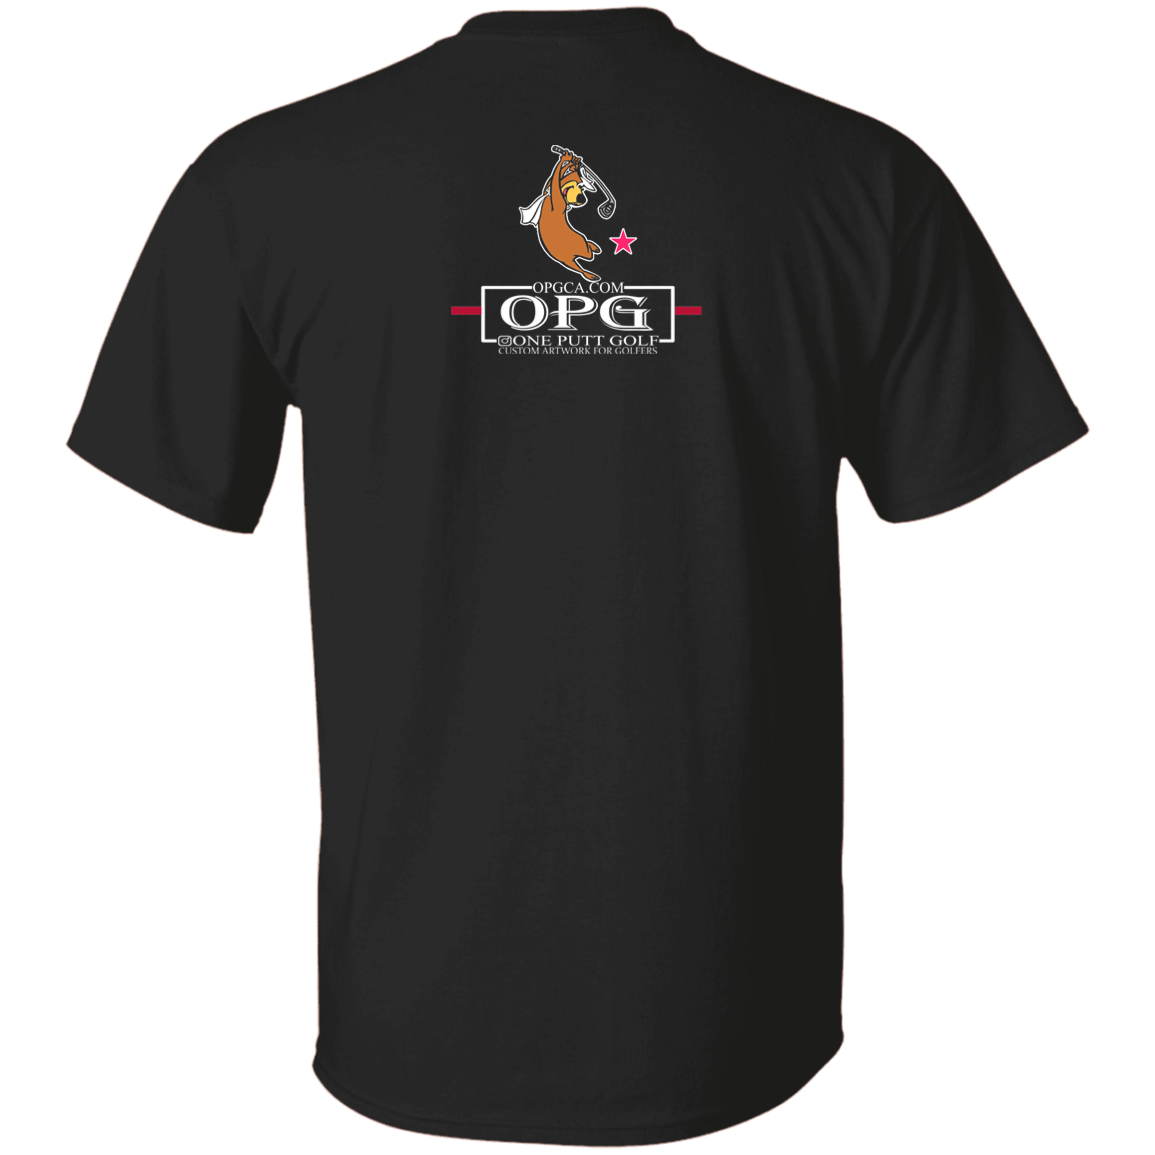 OPG Custom Design #15. Golf Southern California with Yogi Bear Fan Art. 5.3 oz. T-Shirt